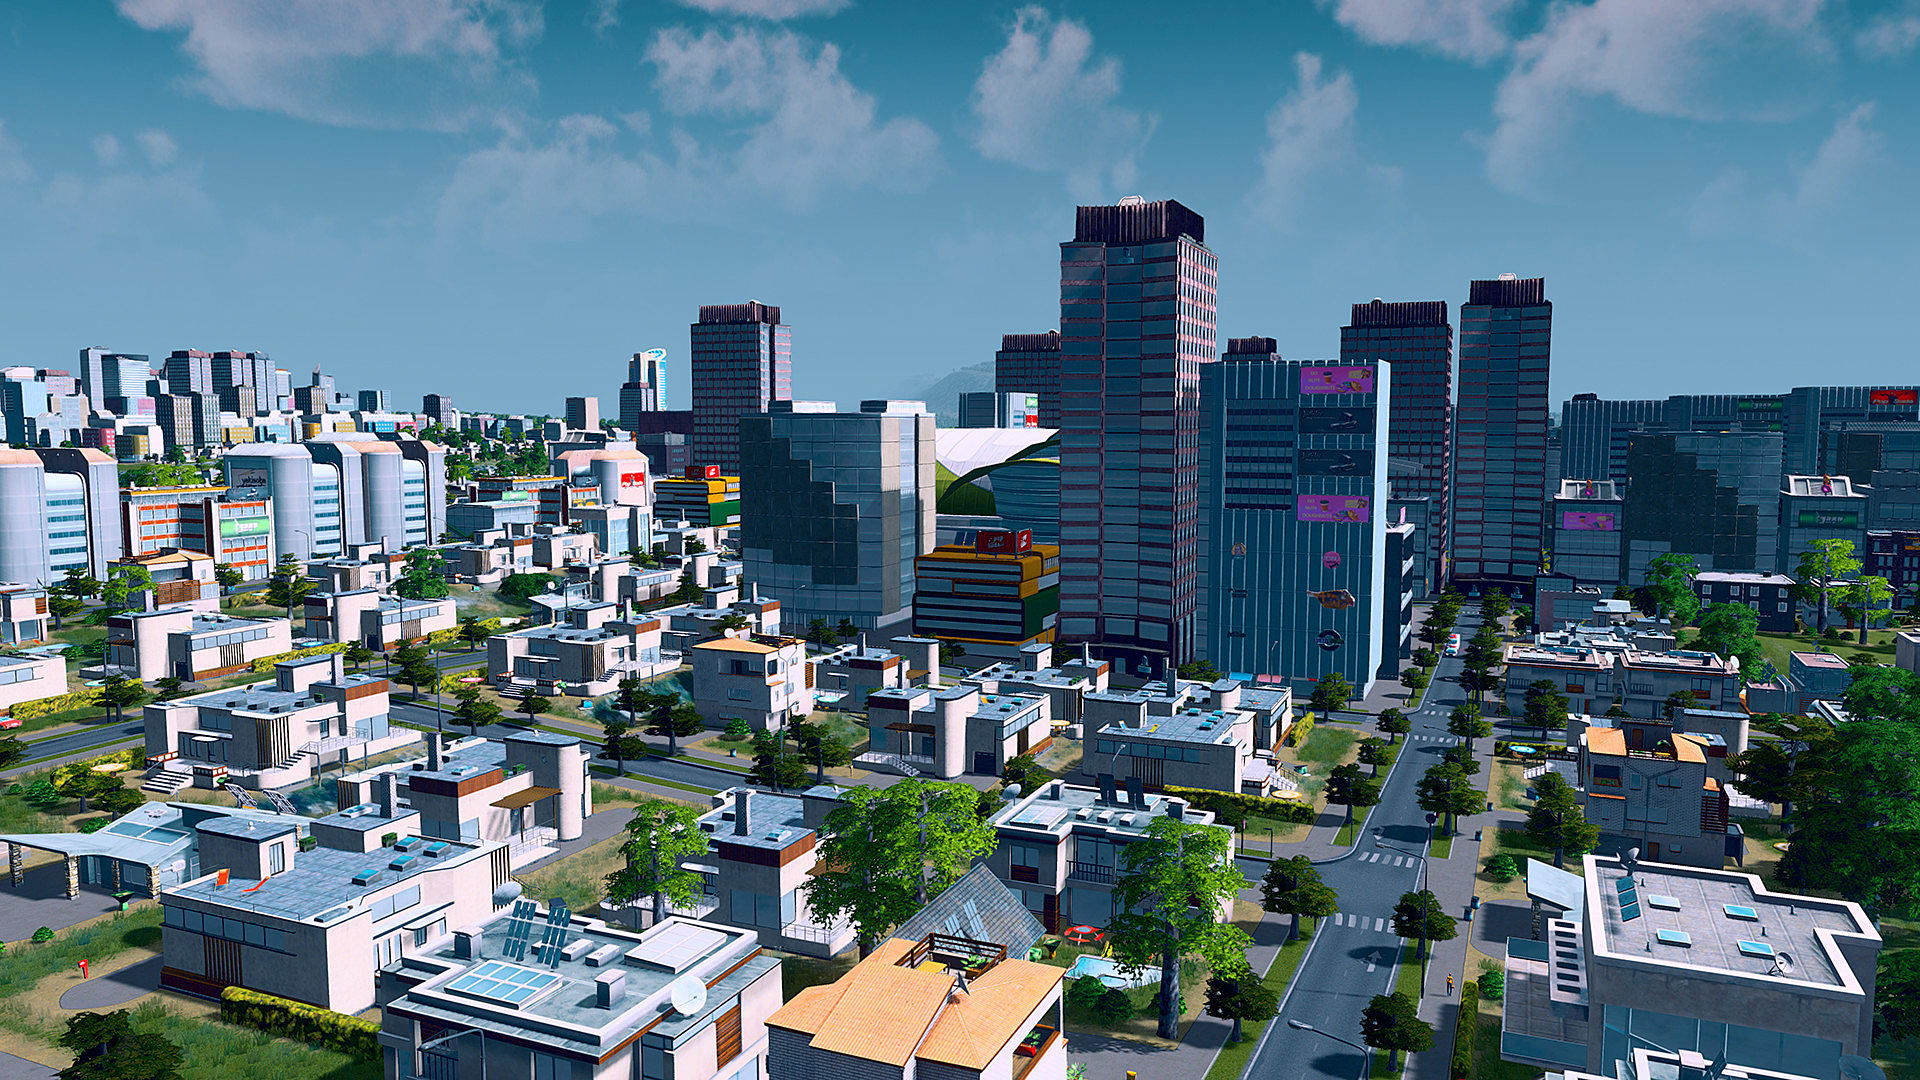 cities skylines best mods